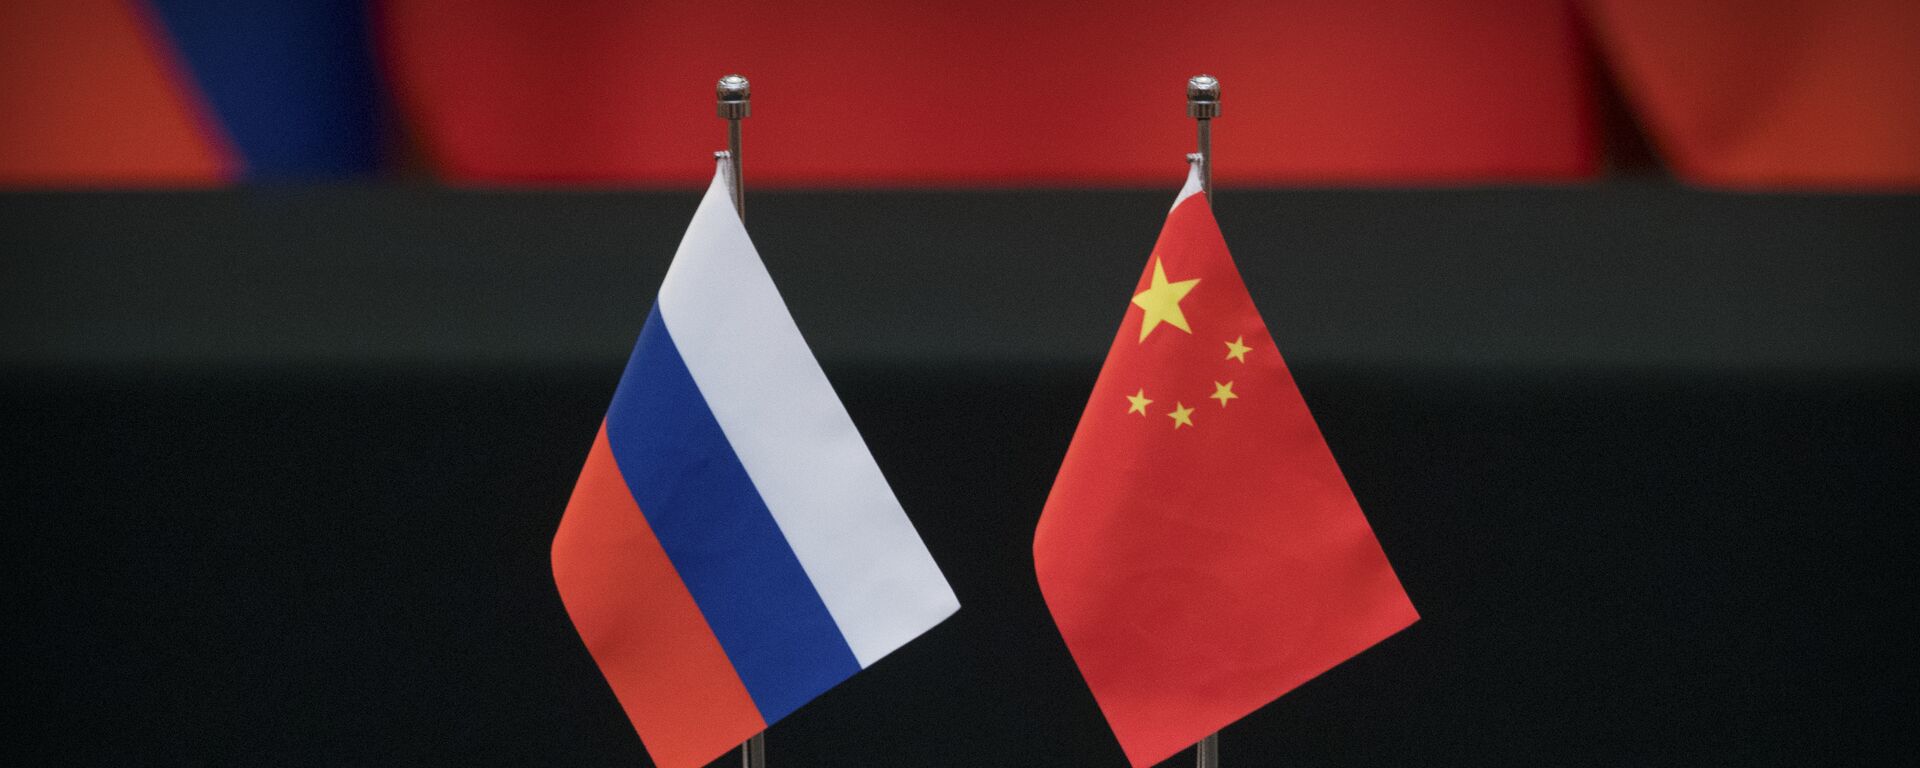 Las banderas de Rusia y China - Sputnik Mundo, 1920, 18.12.2022